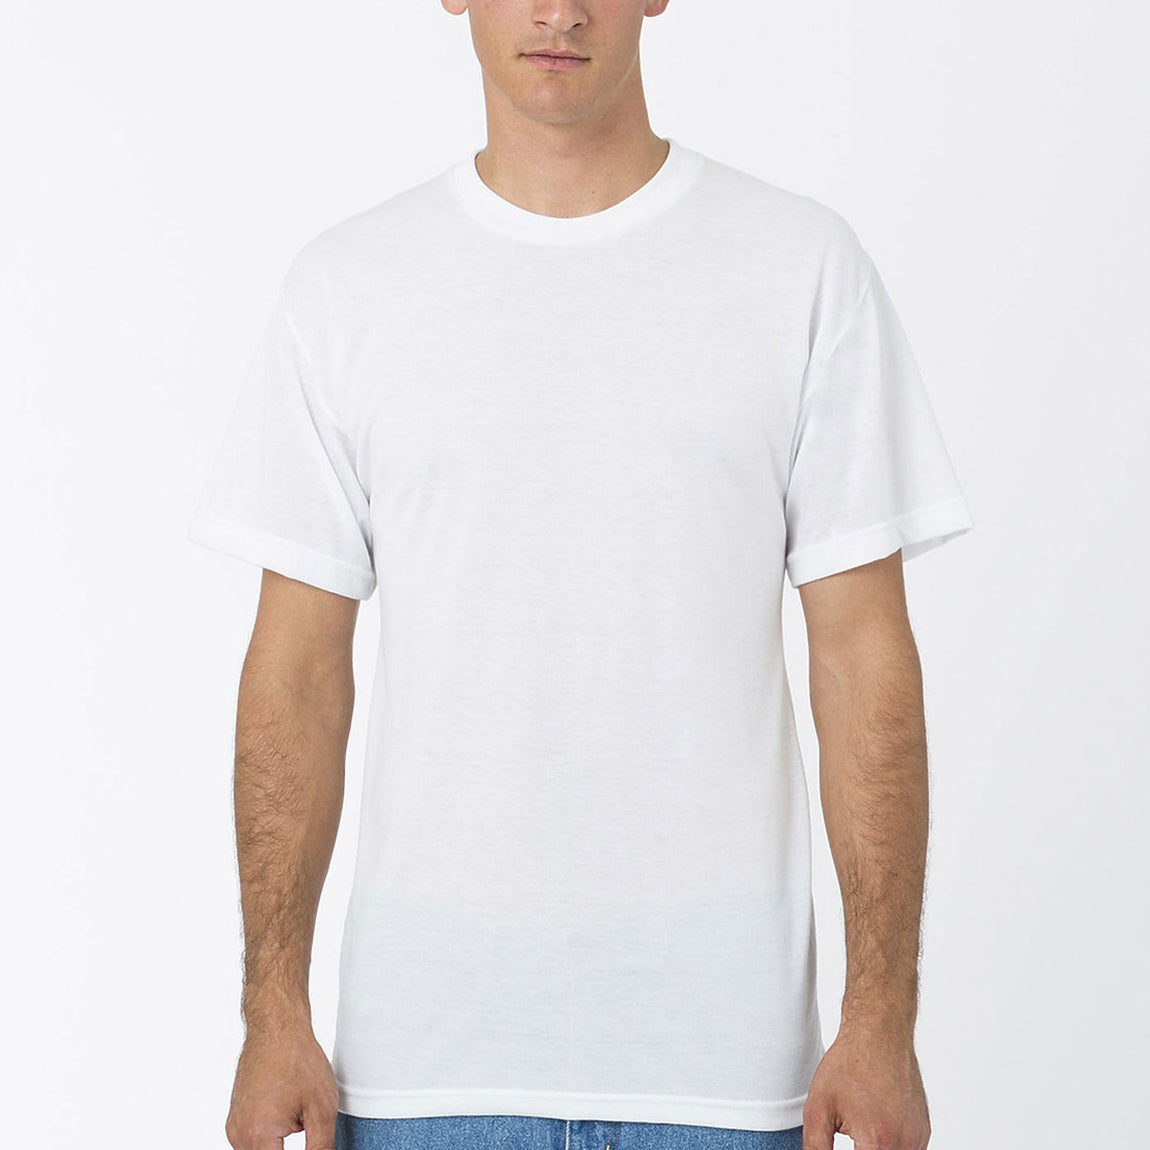 S/S Sublimation T Shirt 4.5 Oz